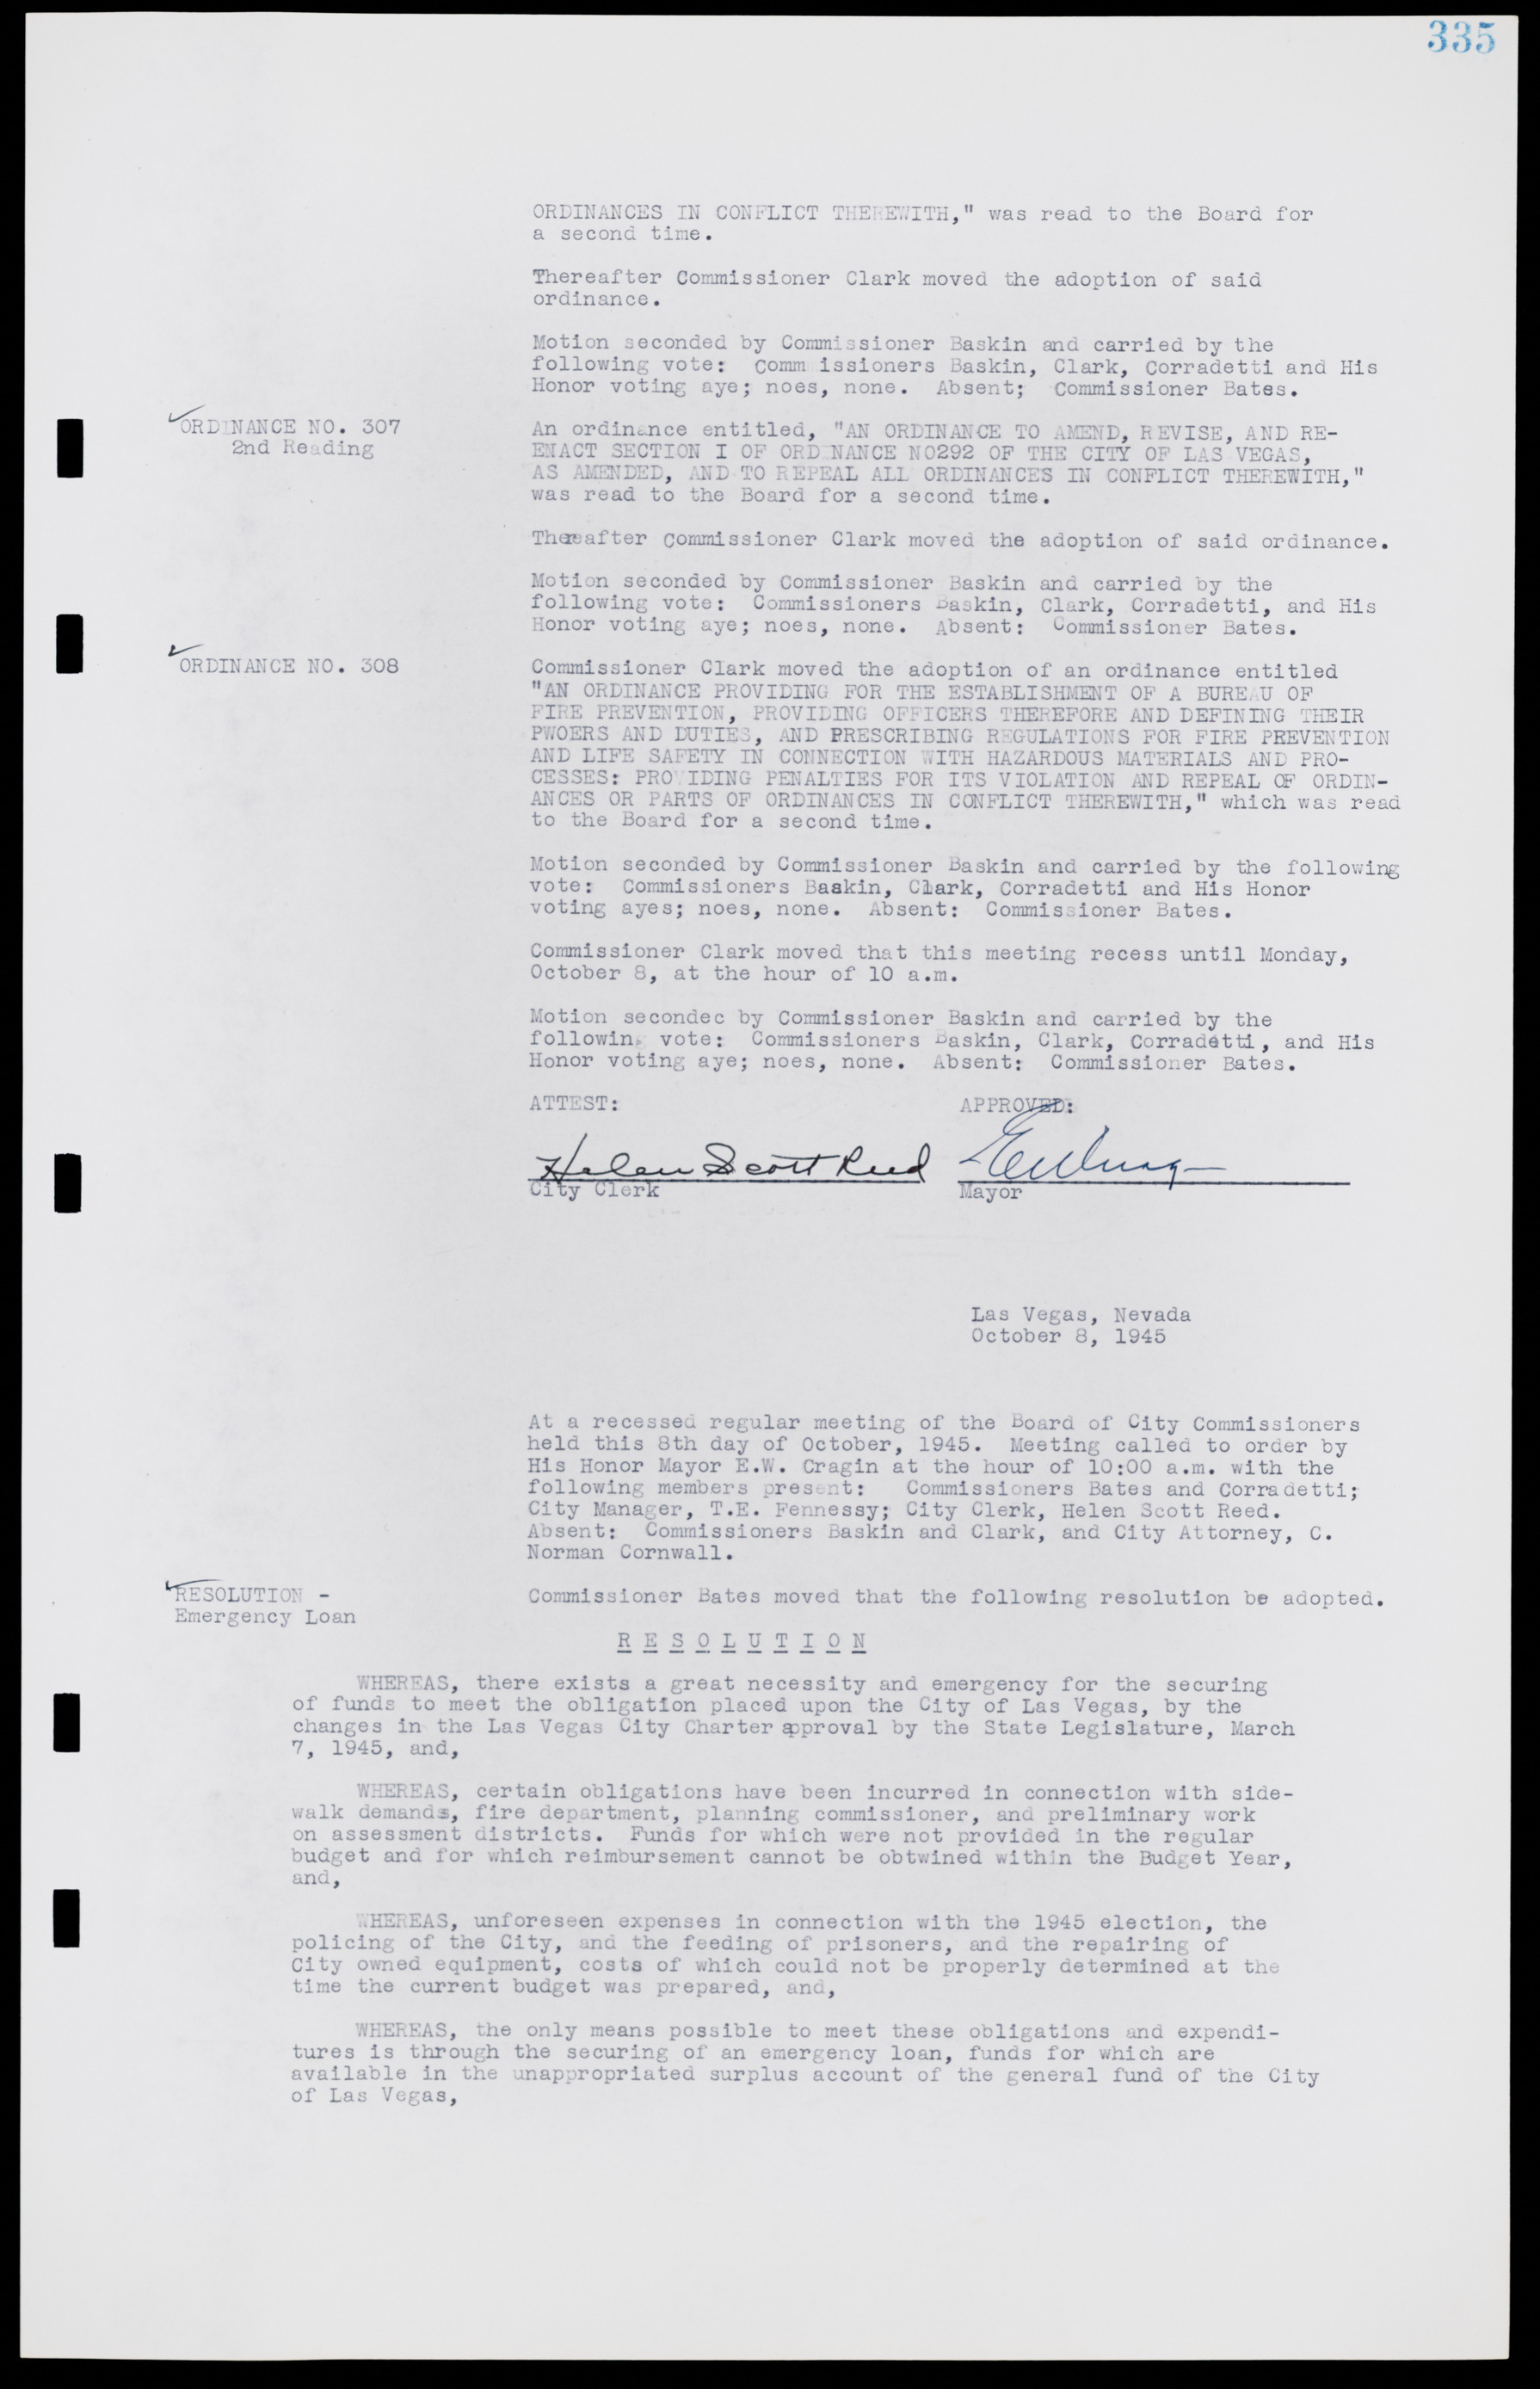 Las Vegas City Commission Minutes, August 11, 1942 to December 30, 1946, lvc000005-359